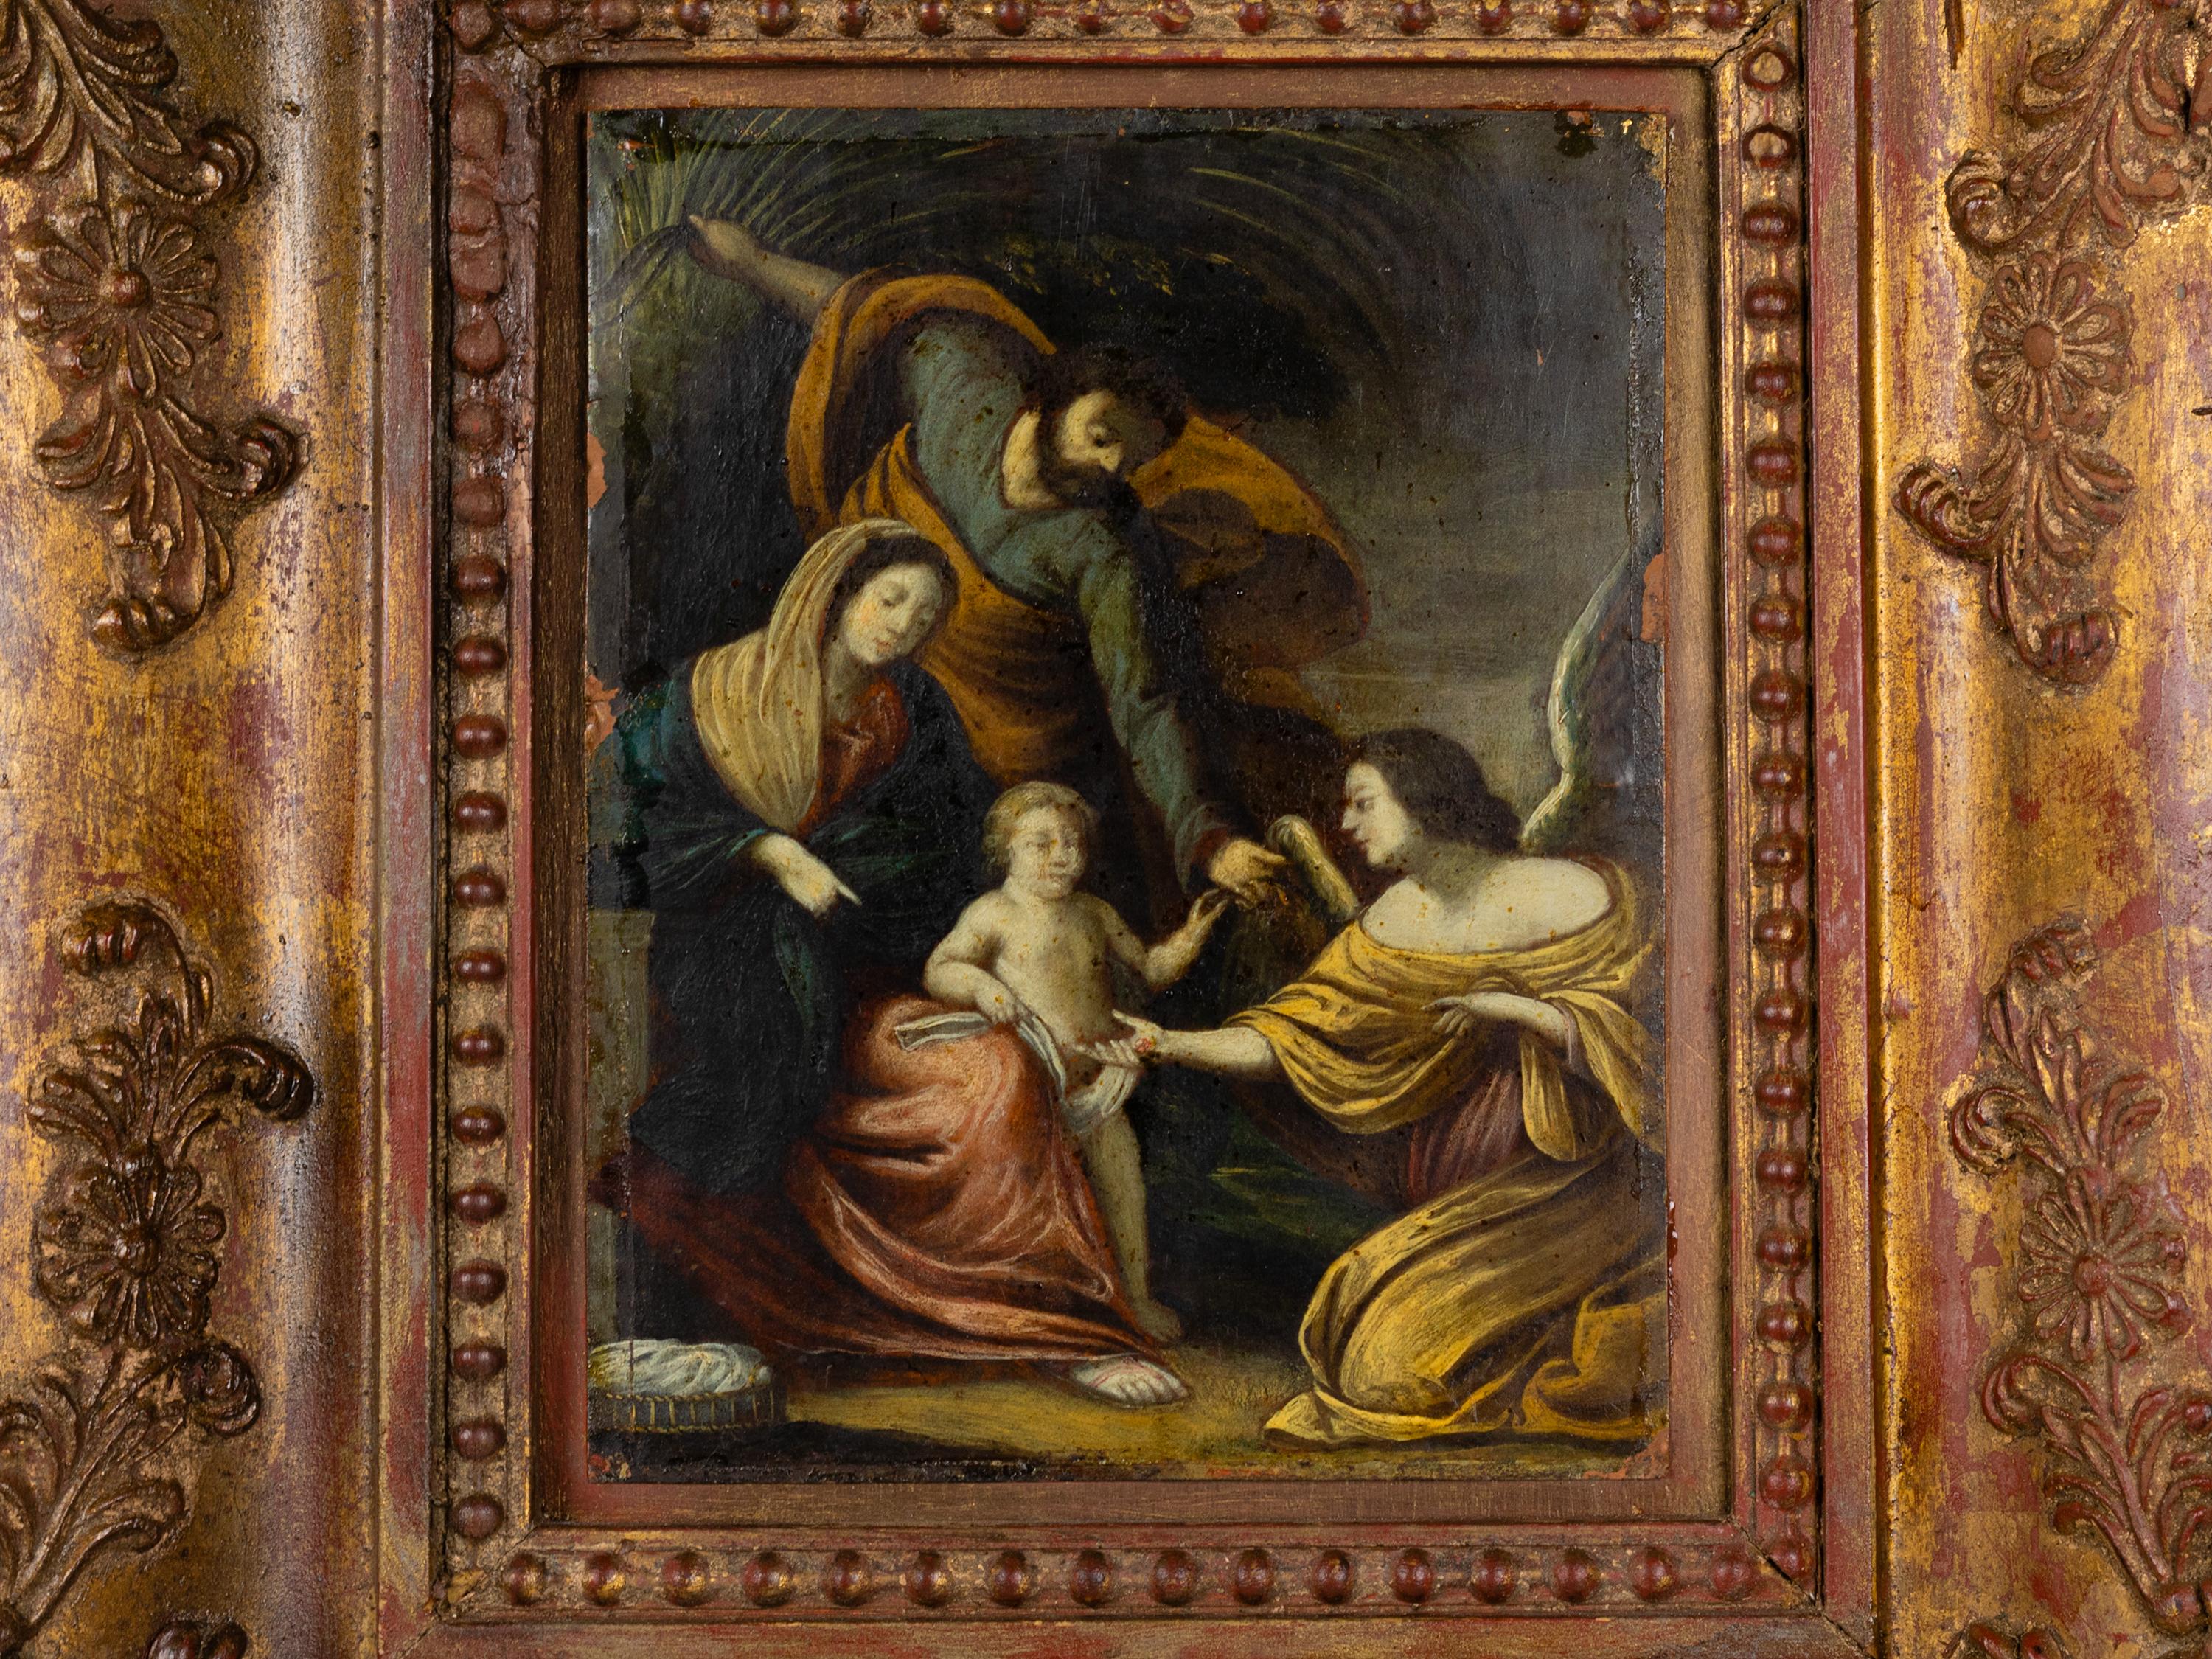 Ein Gemälde aus dem 18. Jahrhundert, das die Heilige Familie, das Jesuskind, die Jungfrau Maria und den älteren Joseph mit dem Engel darstellt.
Öl auf Kupfer.  

Rahmen:
Breite: 18,11 Zoll (46 cm) 
Tiefe: 15,74 Zoll (40 cm) 

Segeltuch:
Breite: 8,85